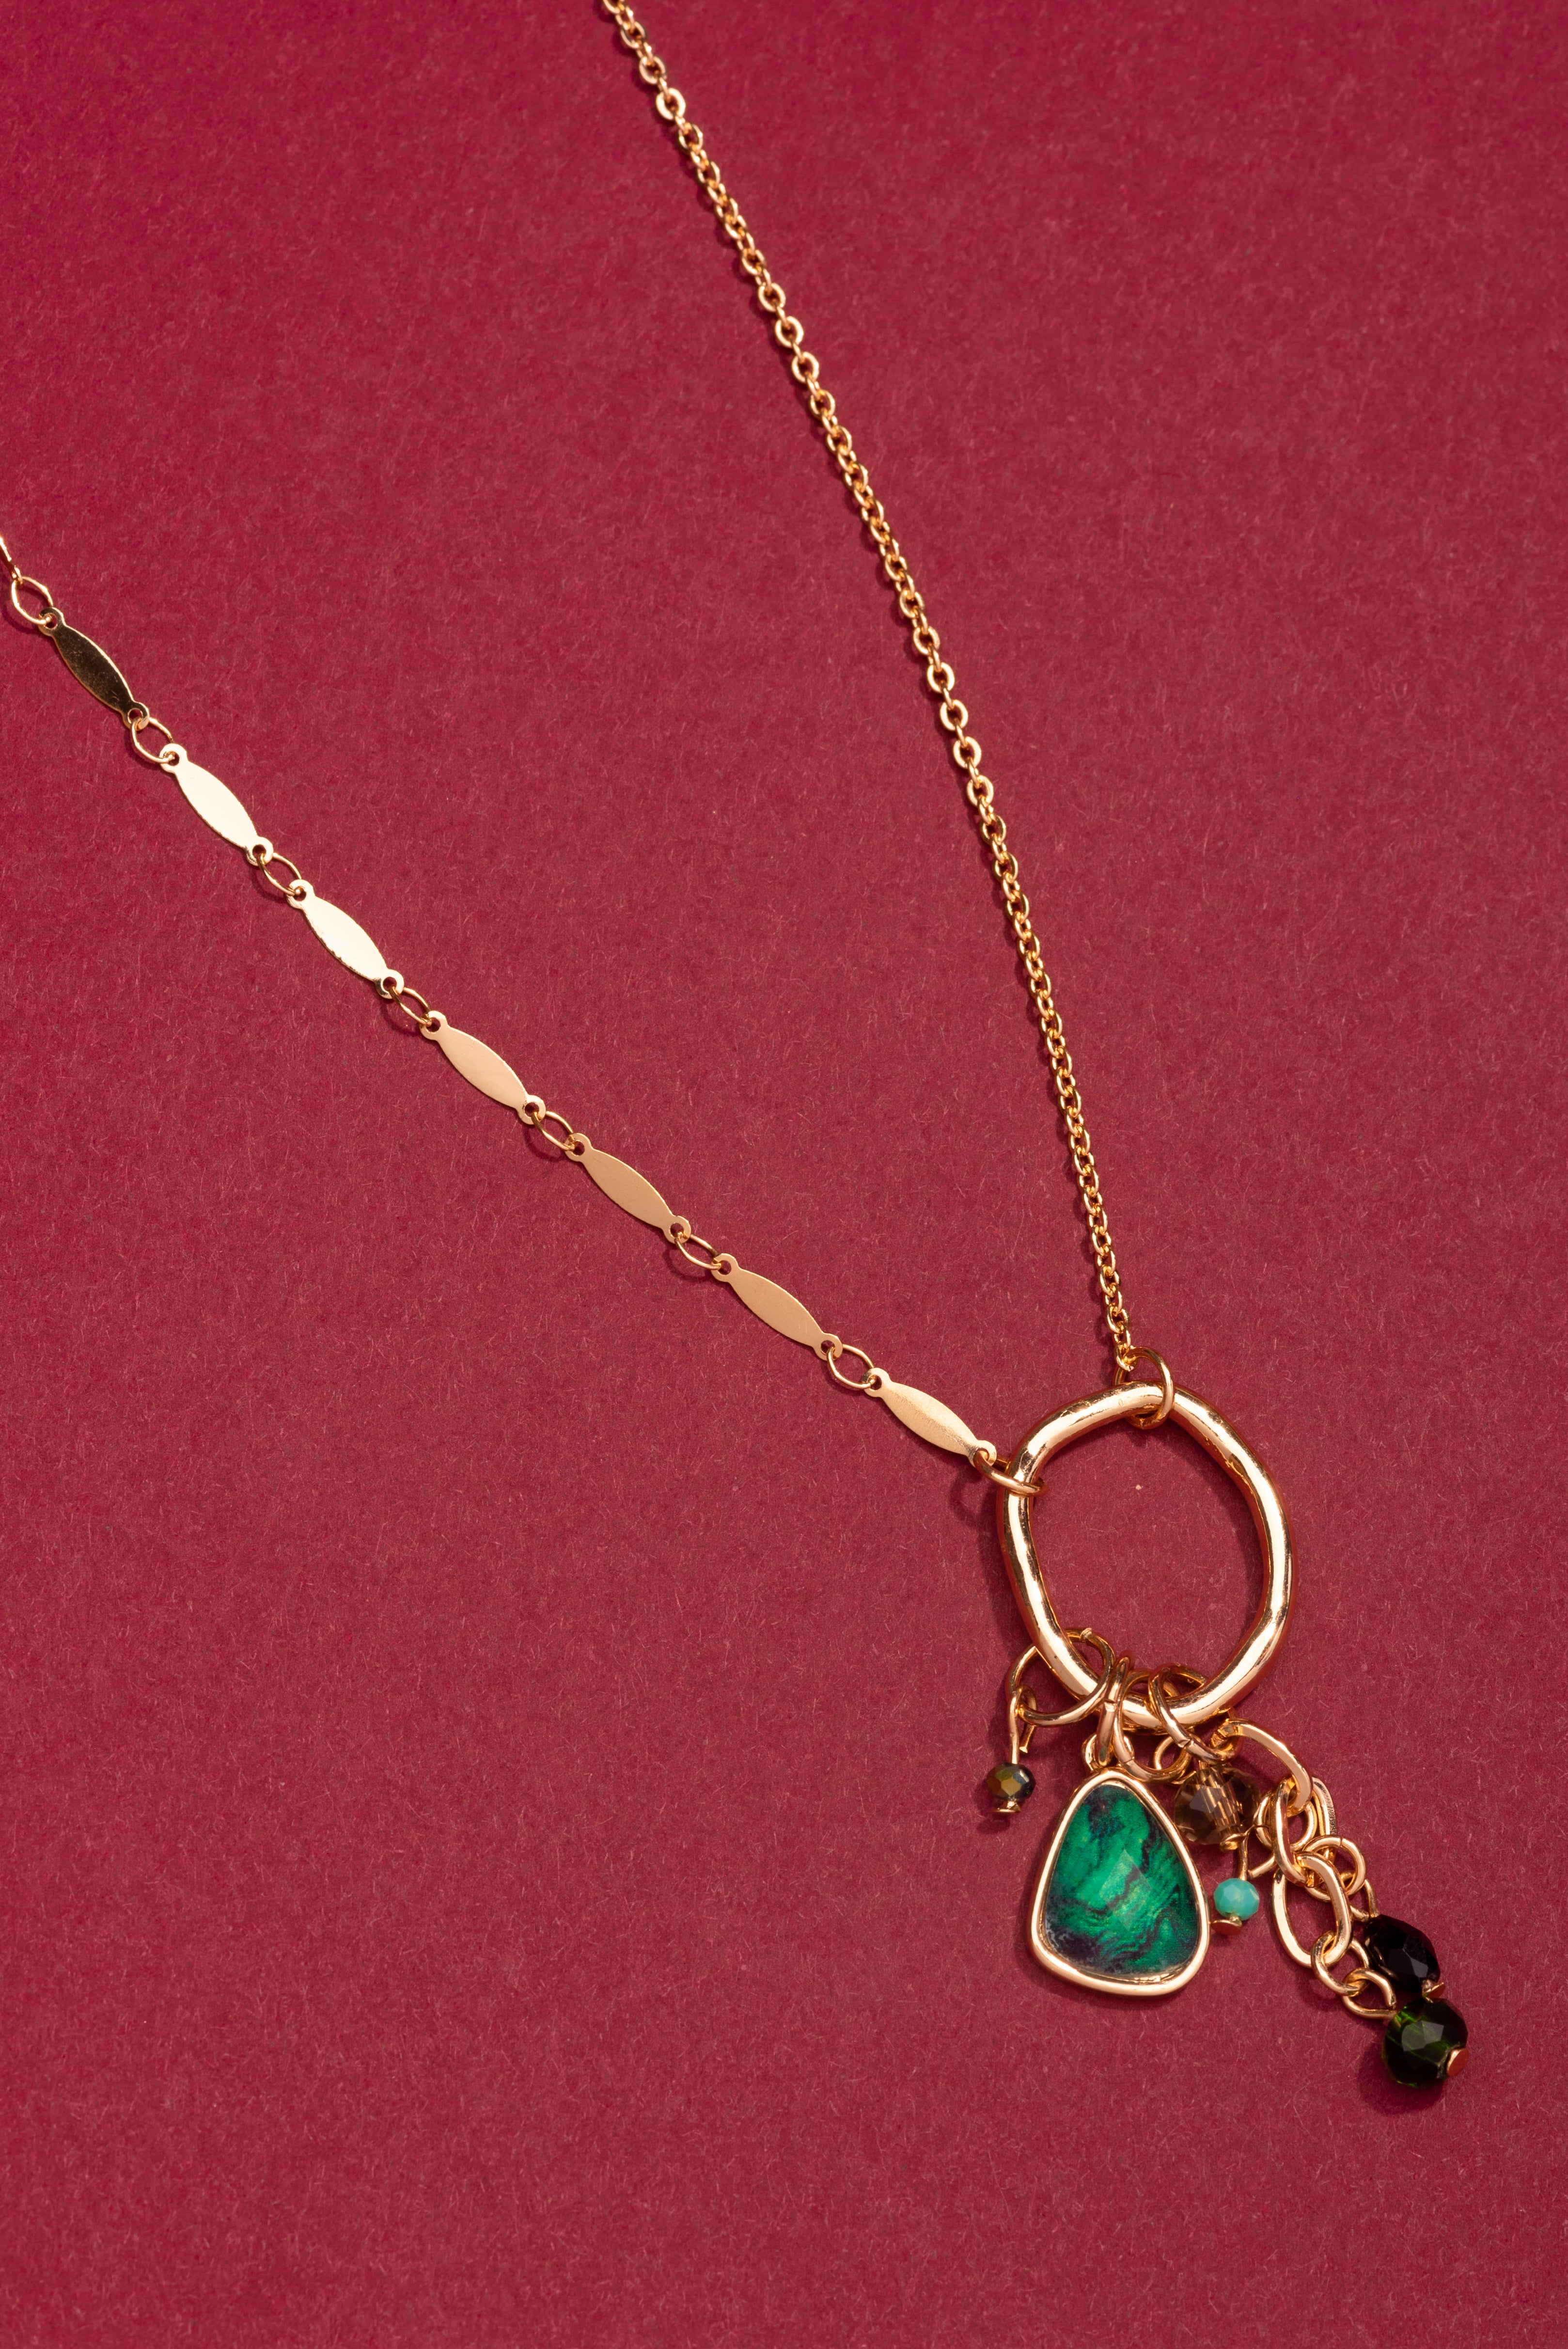 Type 3 Moorlands Necklace